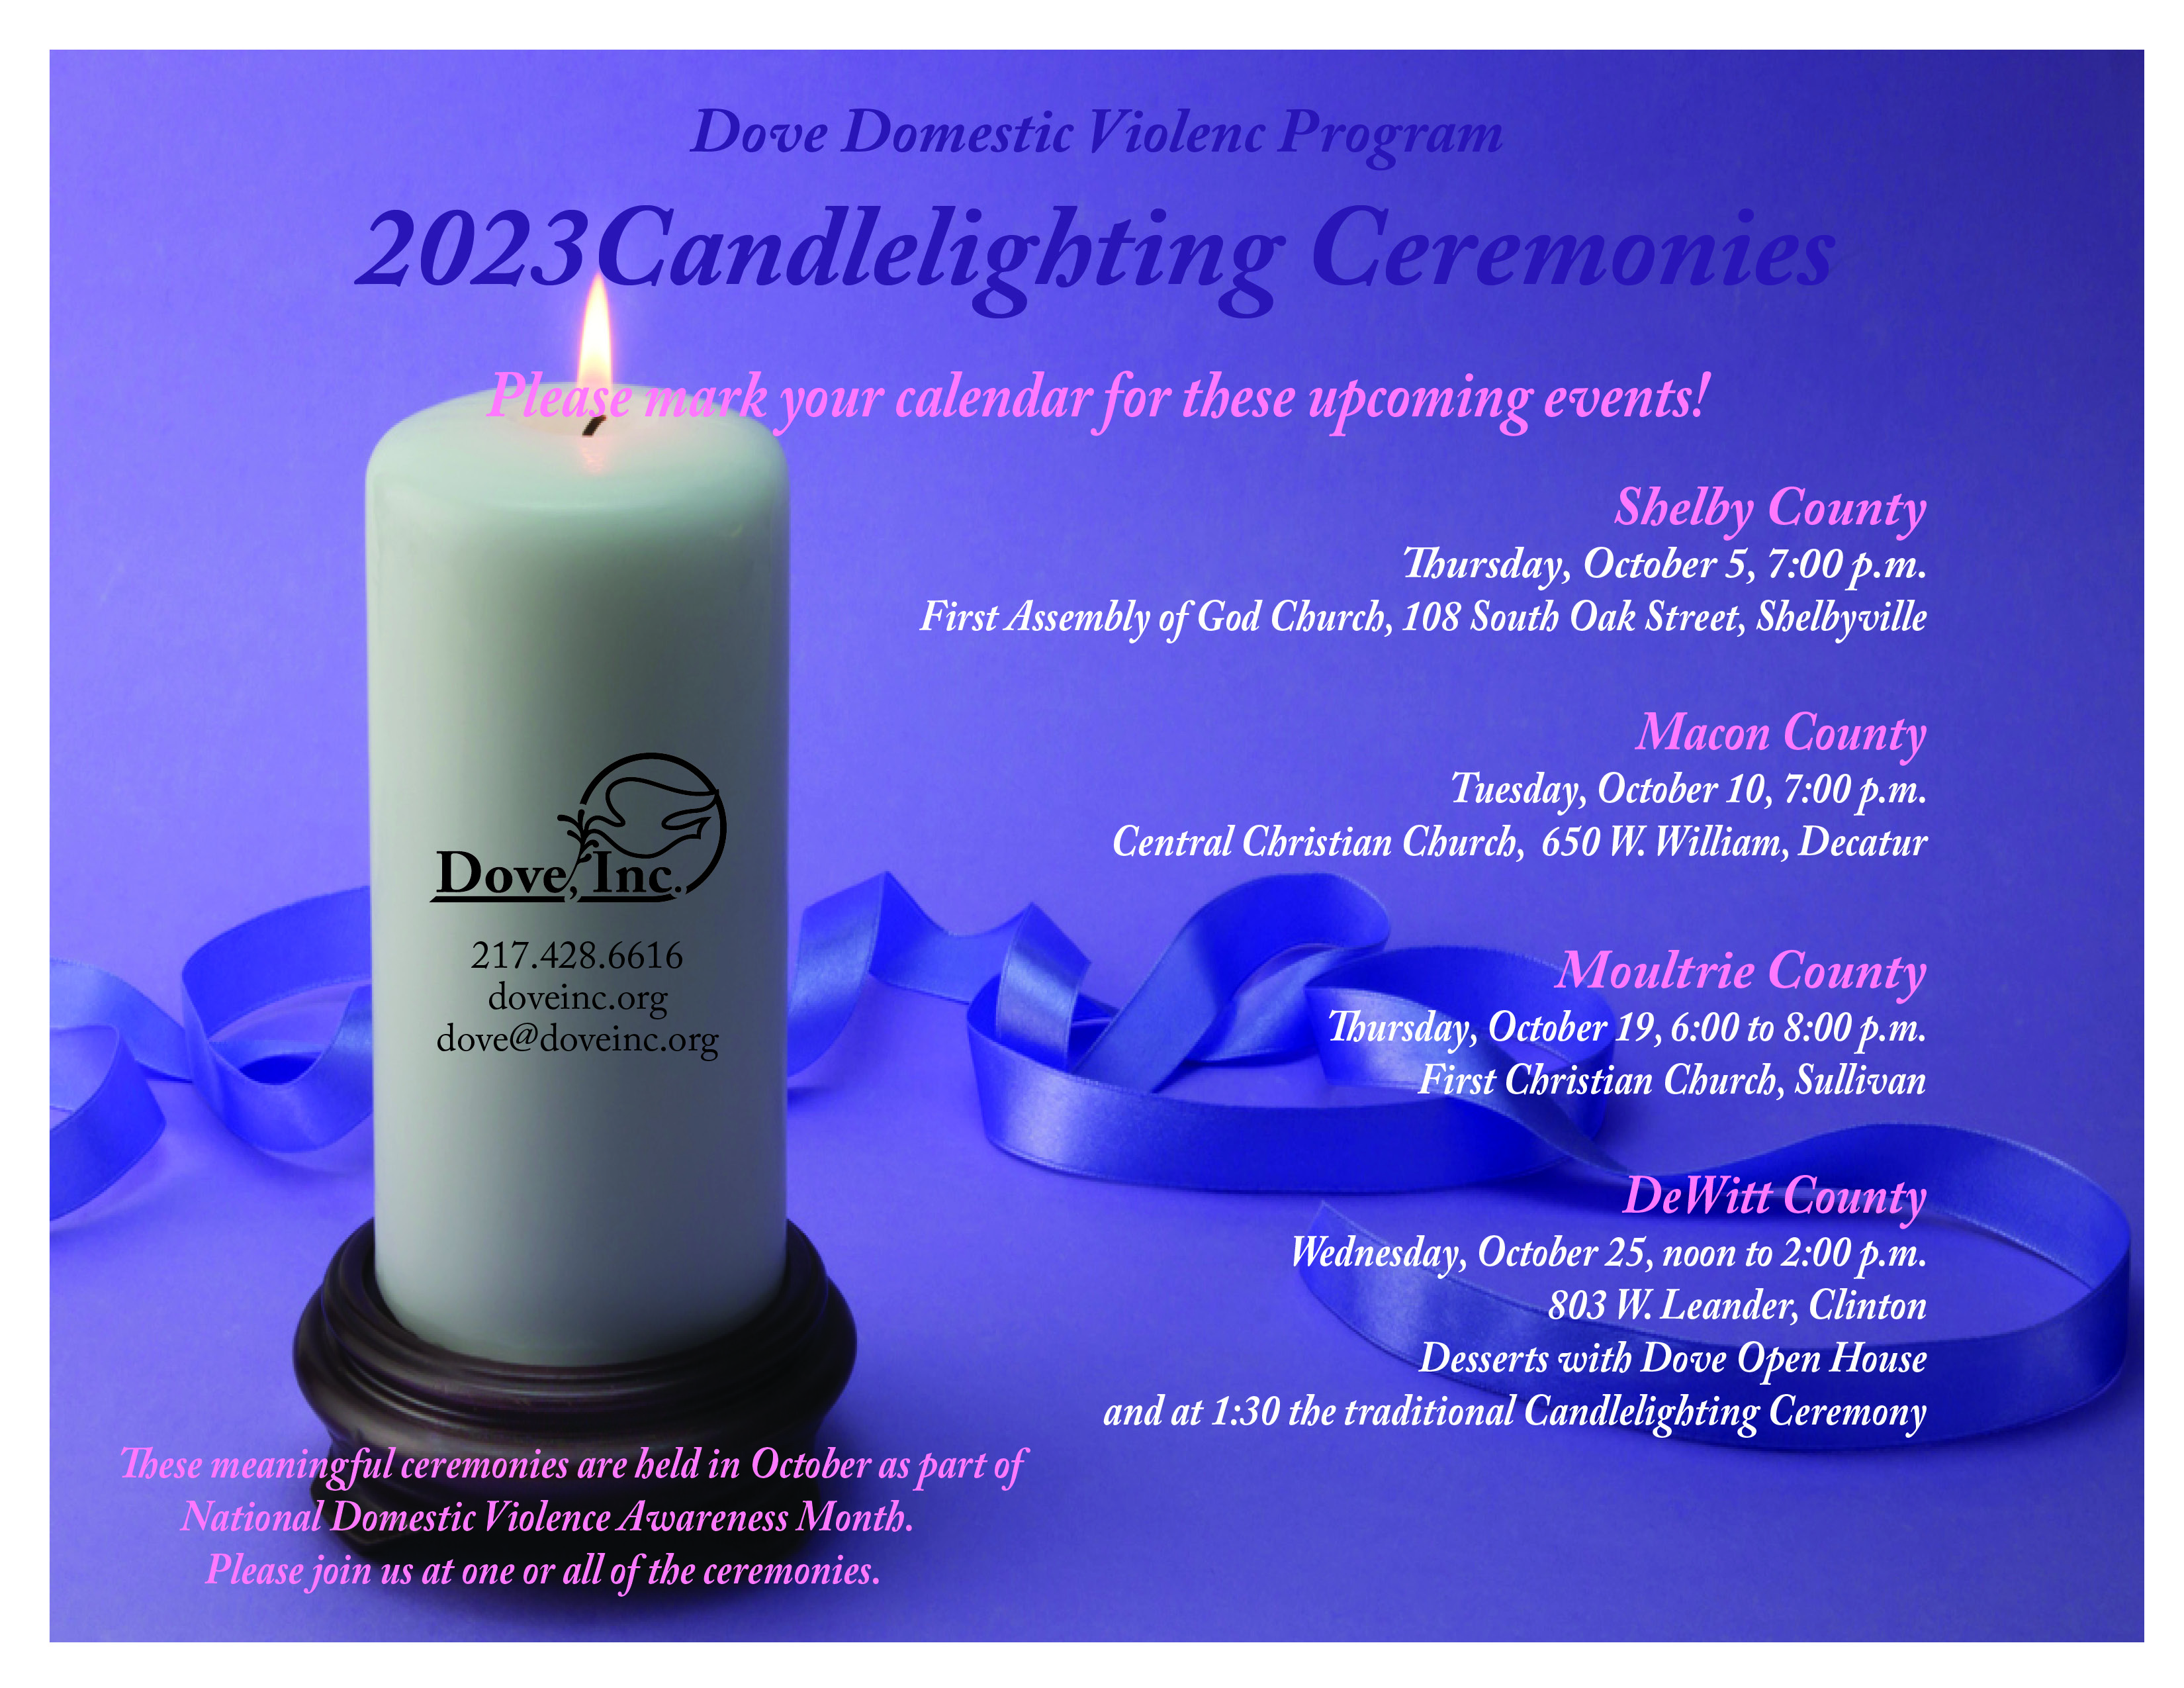 Dove 2023 Candlelighting Ceremonies.jpg